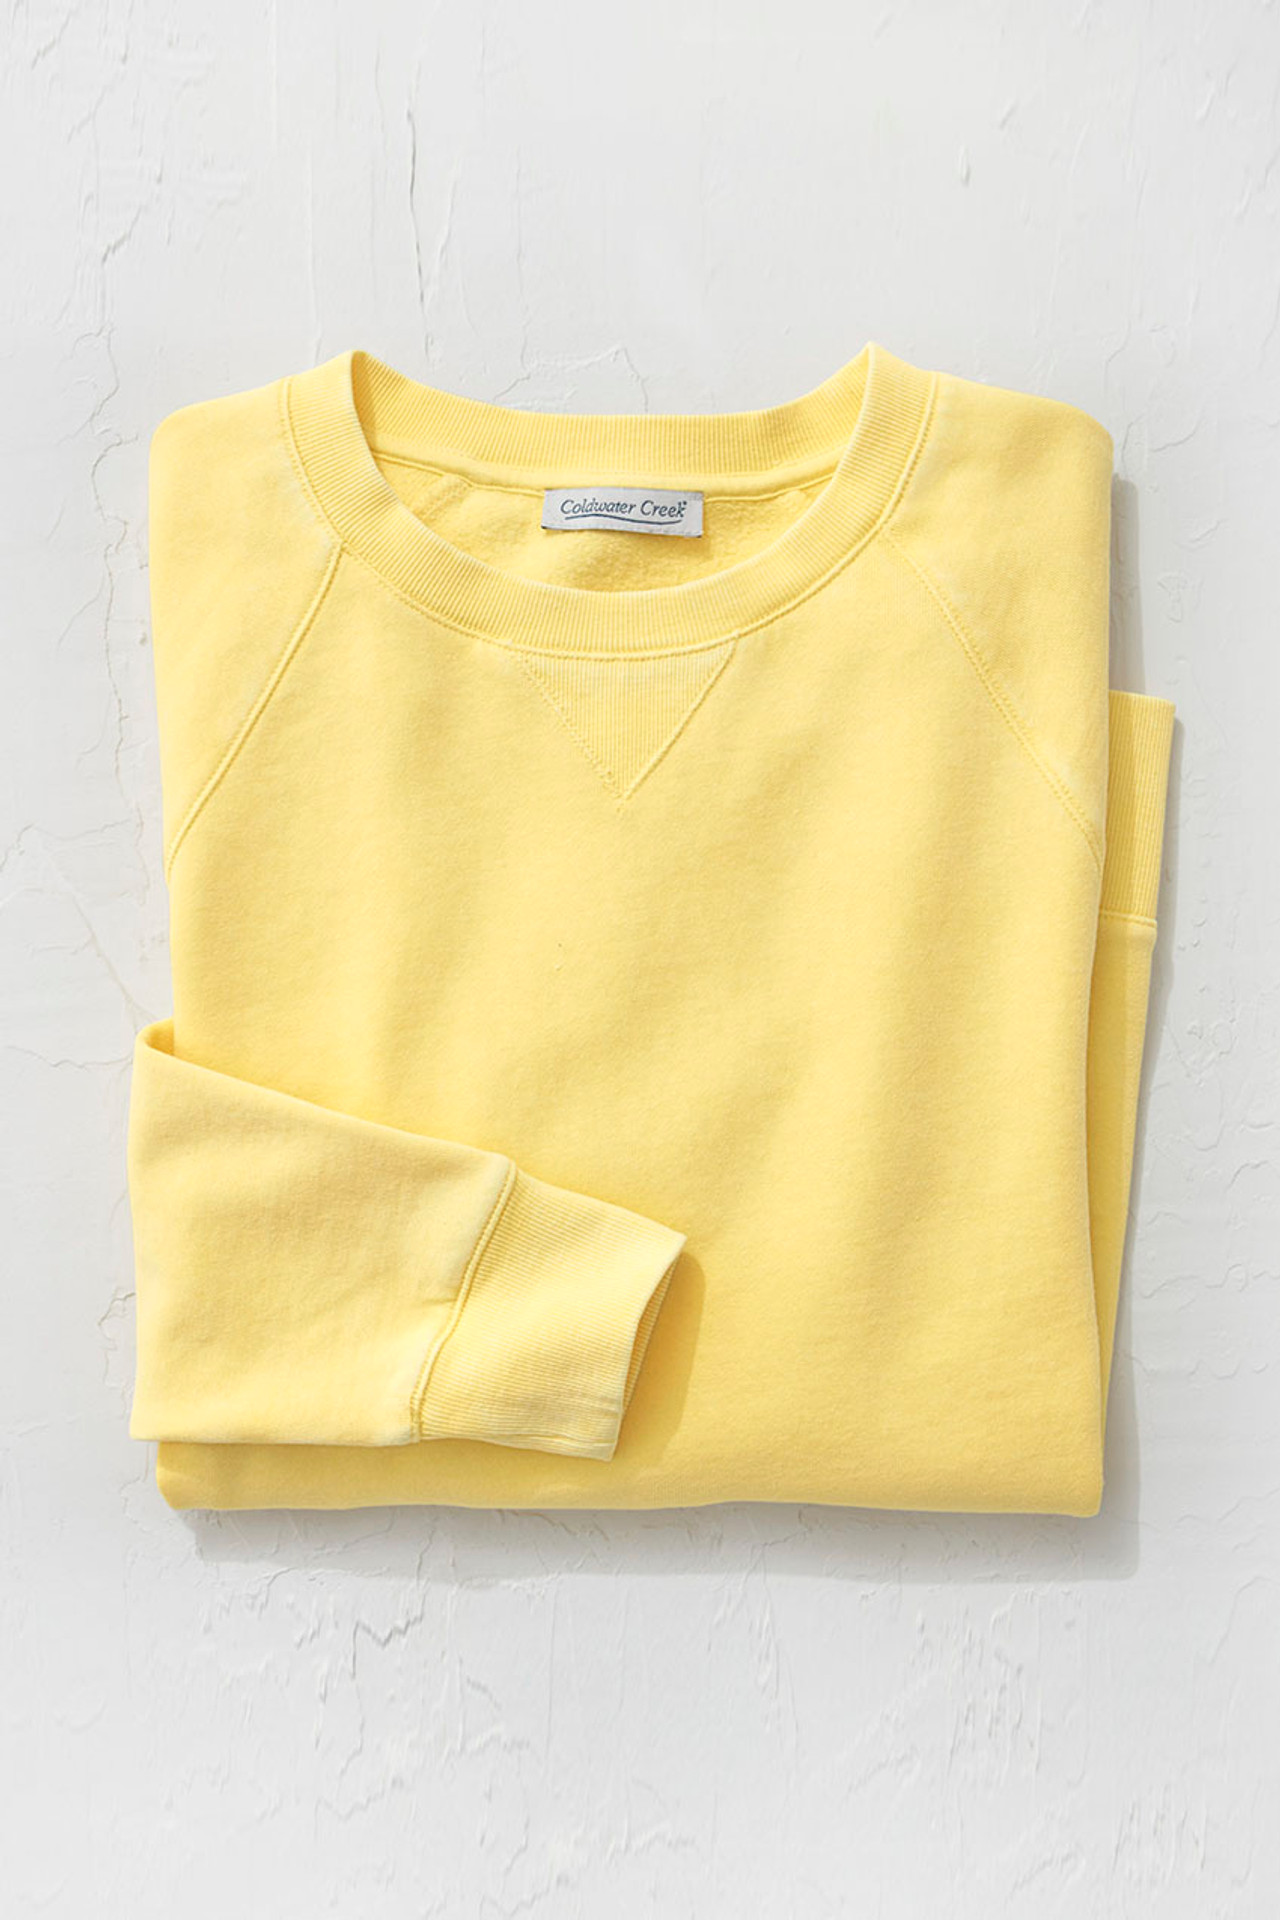 Colorwash Fleece Sweatshirt